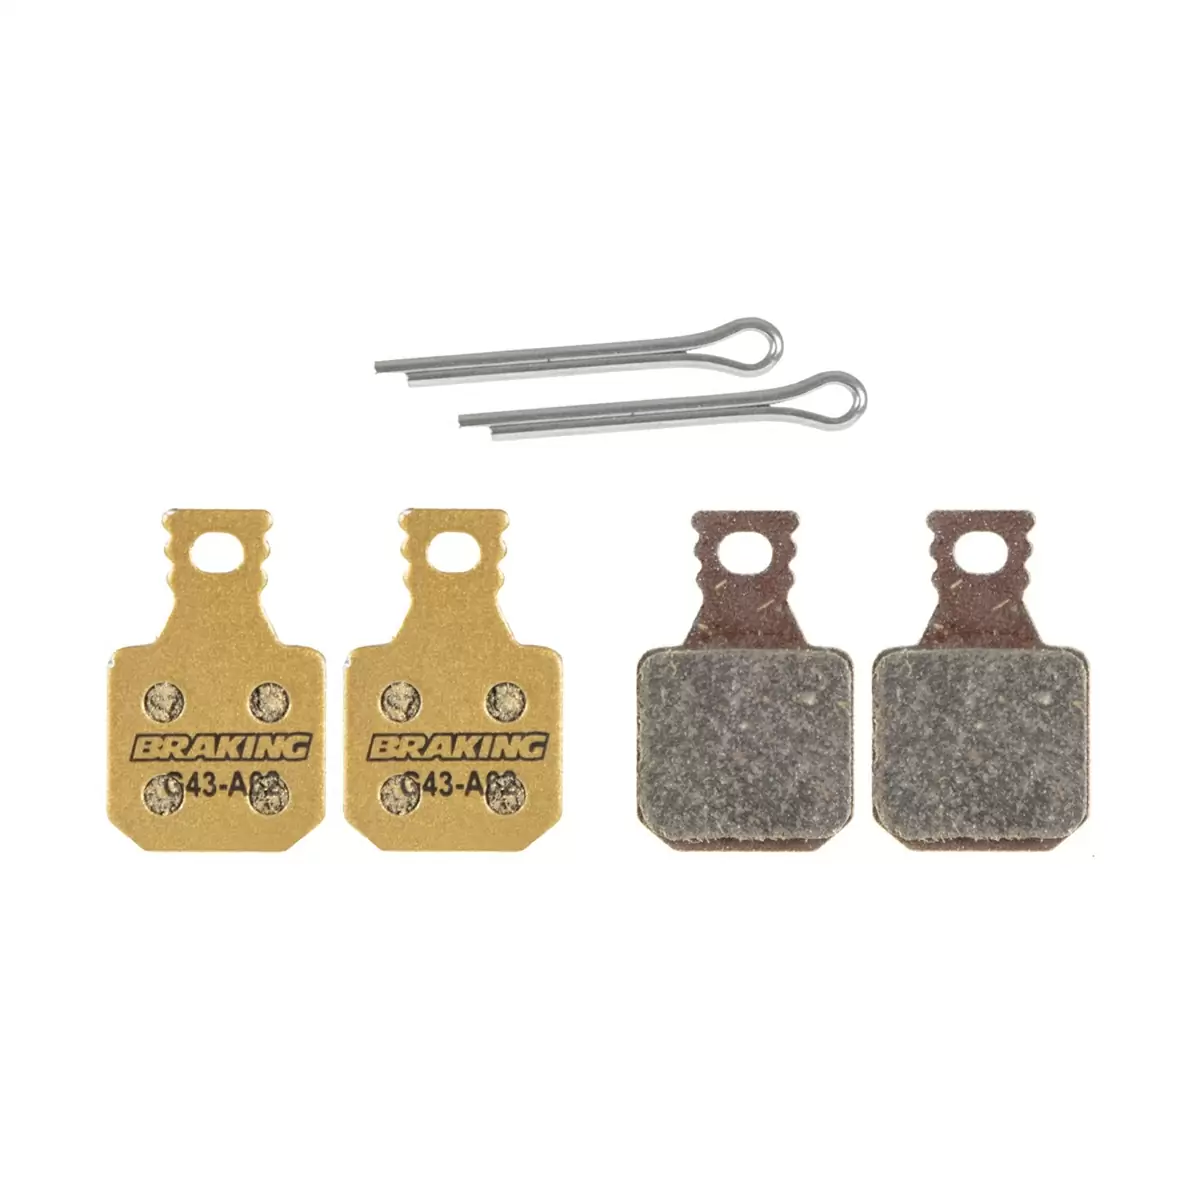 Carbo Metallic P20 pads for Magura MT5 / MT7 (4 pieces) - image